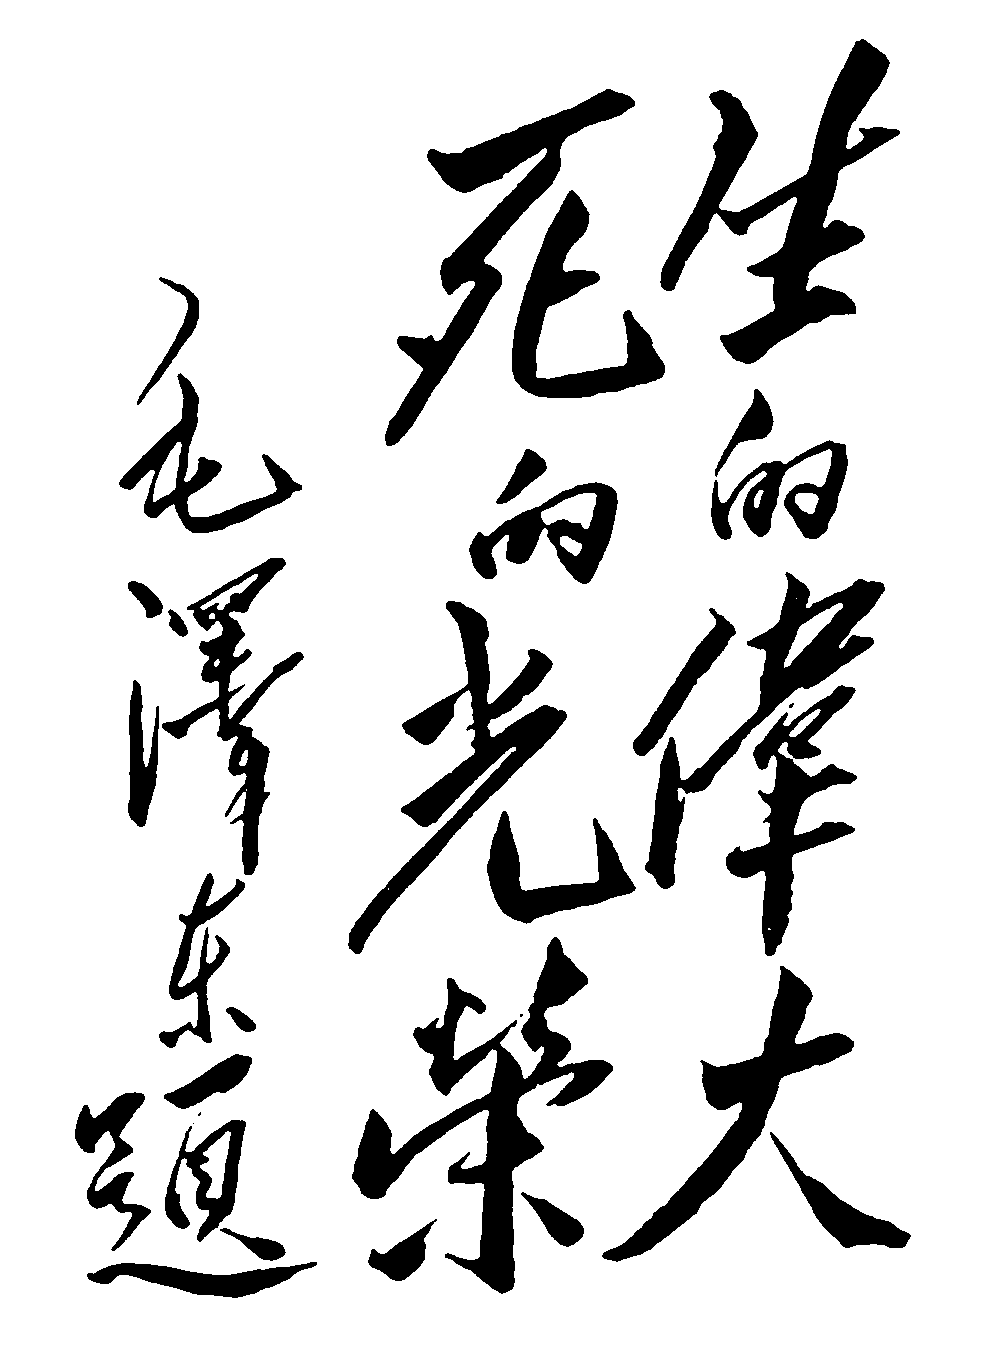 生的伟大死的光荣毛泽东 艺术字 毛笔字 书法字 繁体 标志设计 